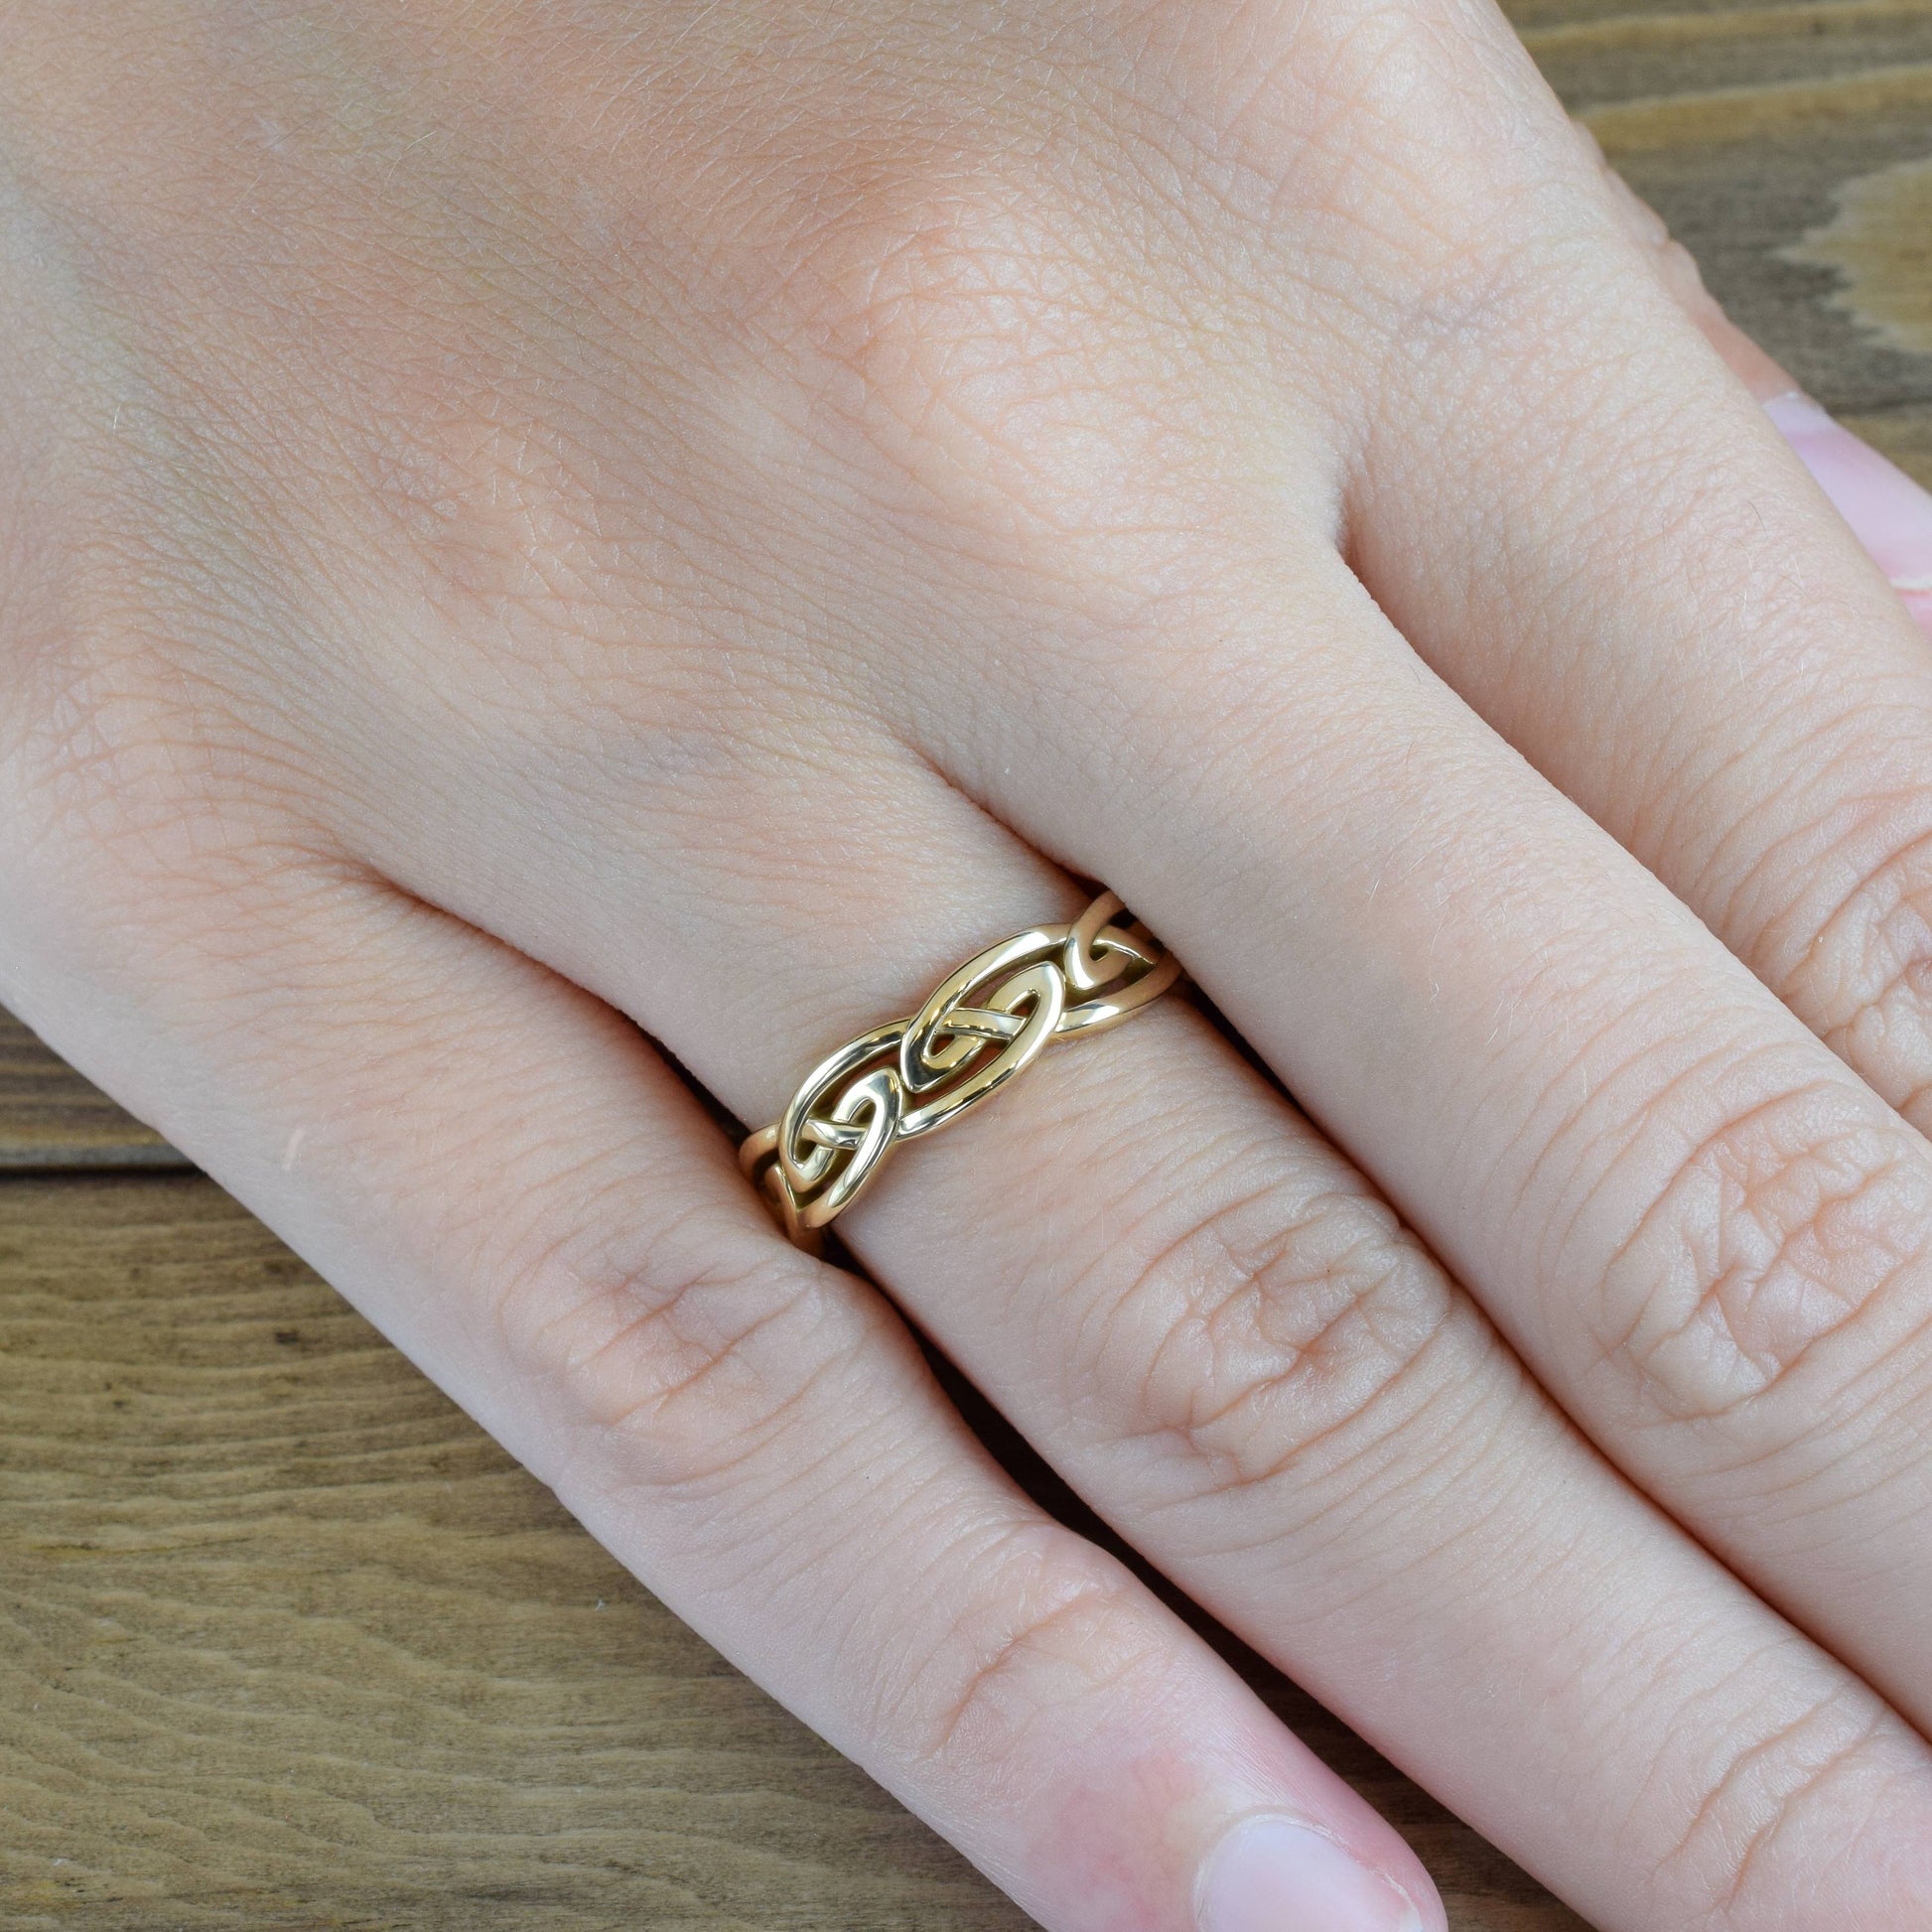 celtic-eternal-knot-ring-yellow-gold-on-finger